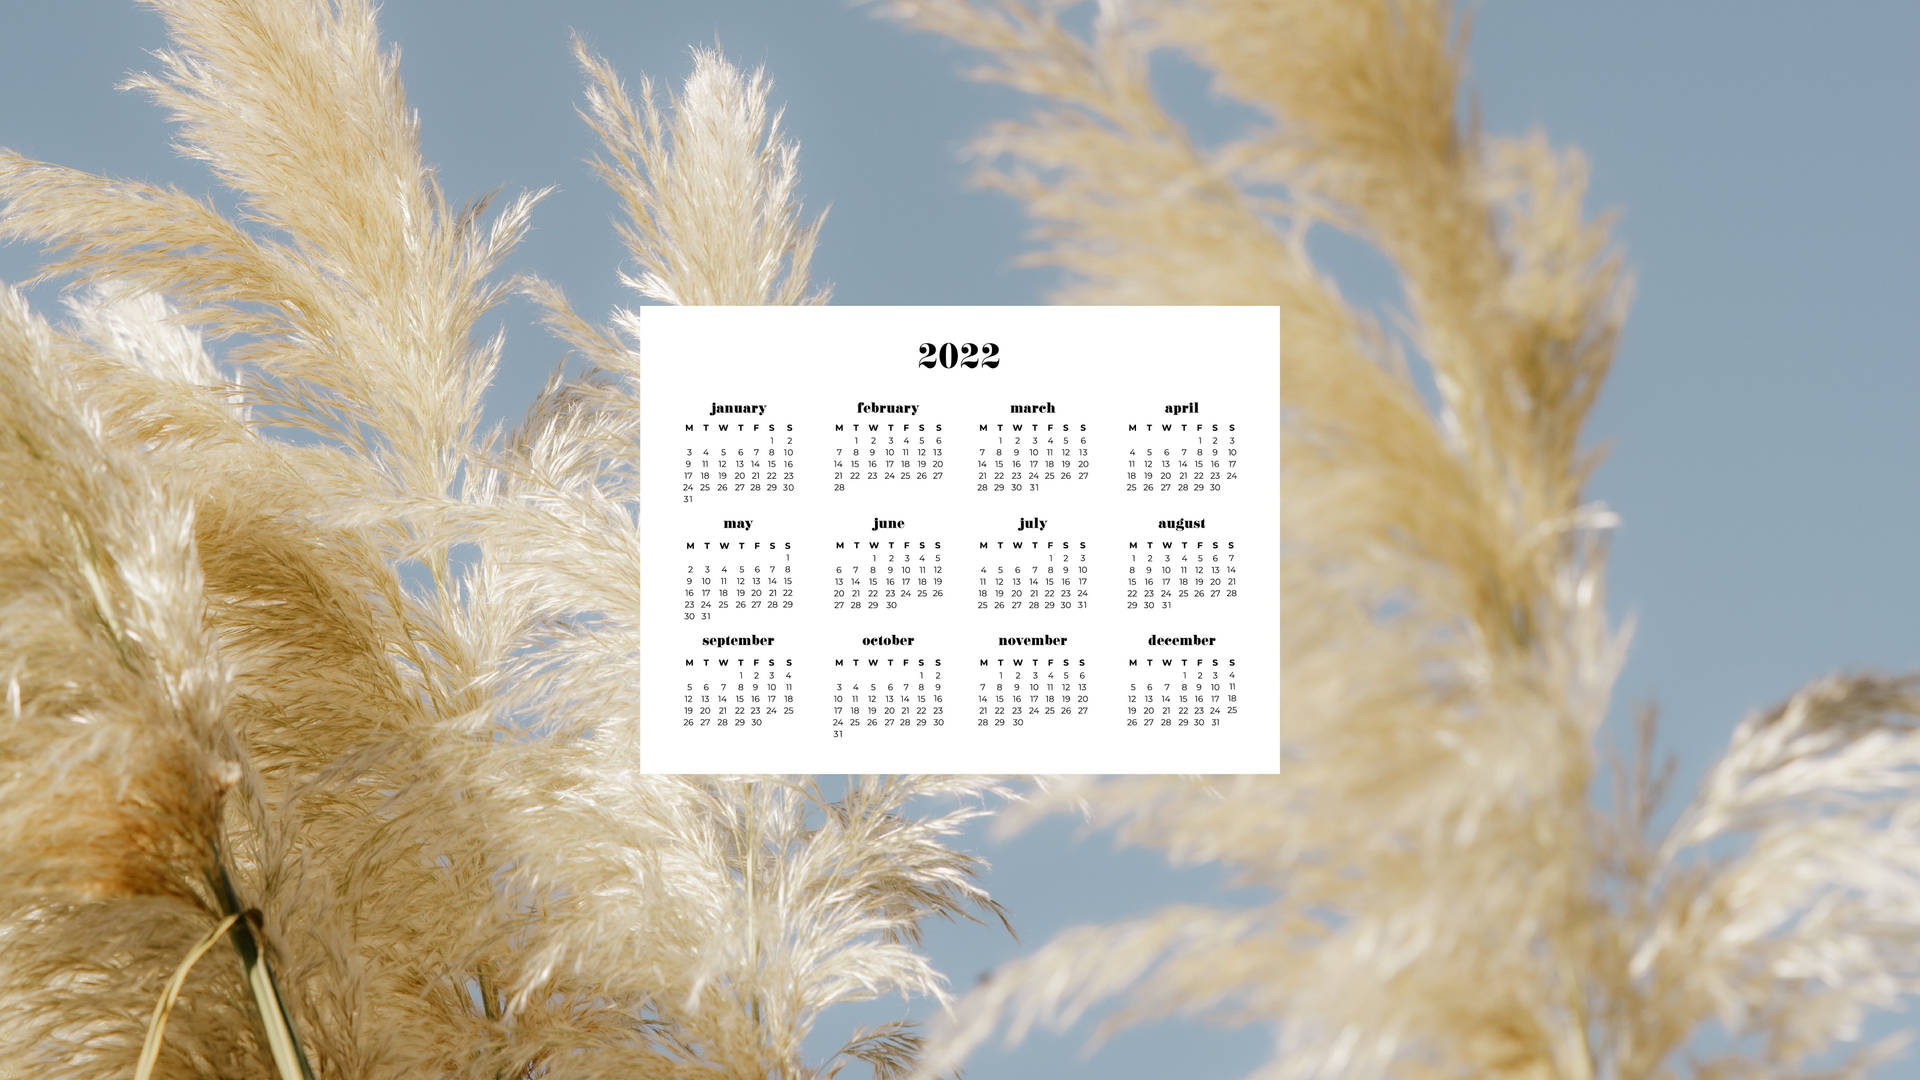 Pampas Grass 2022 Calendar Wallpaper